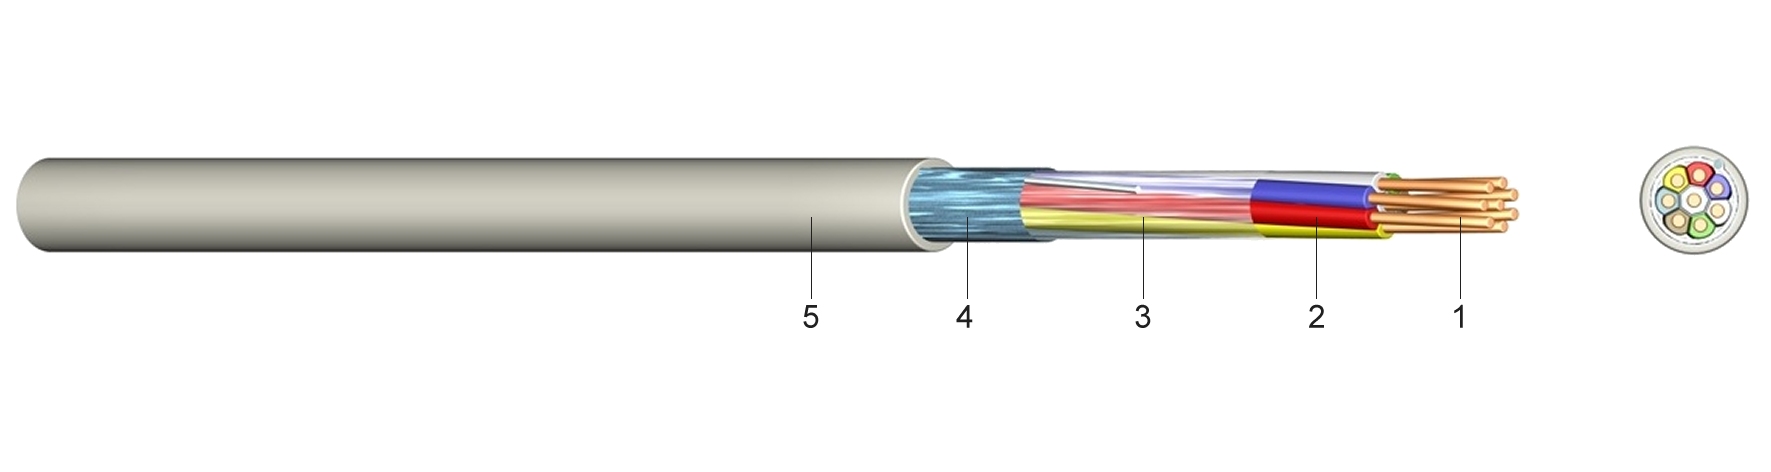 Strom-Kabel 2,5/10 qmm - Jehnert Sound Design Automotive